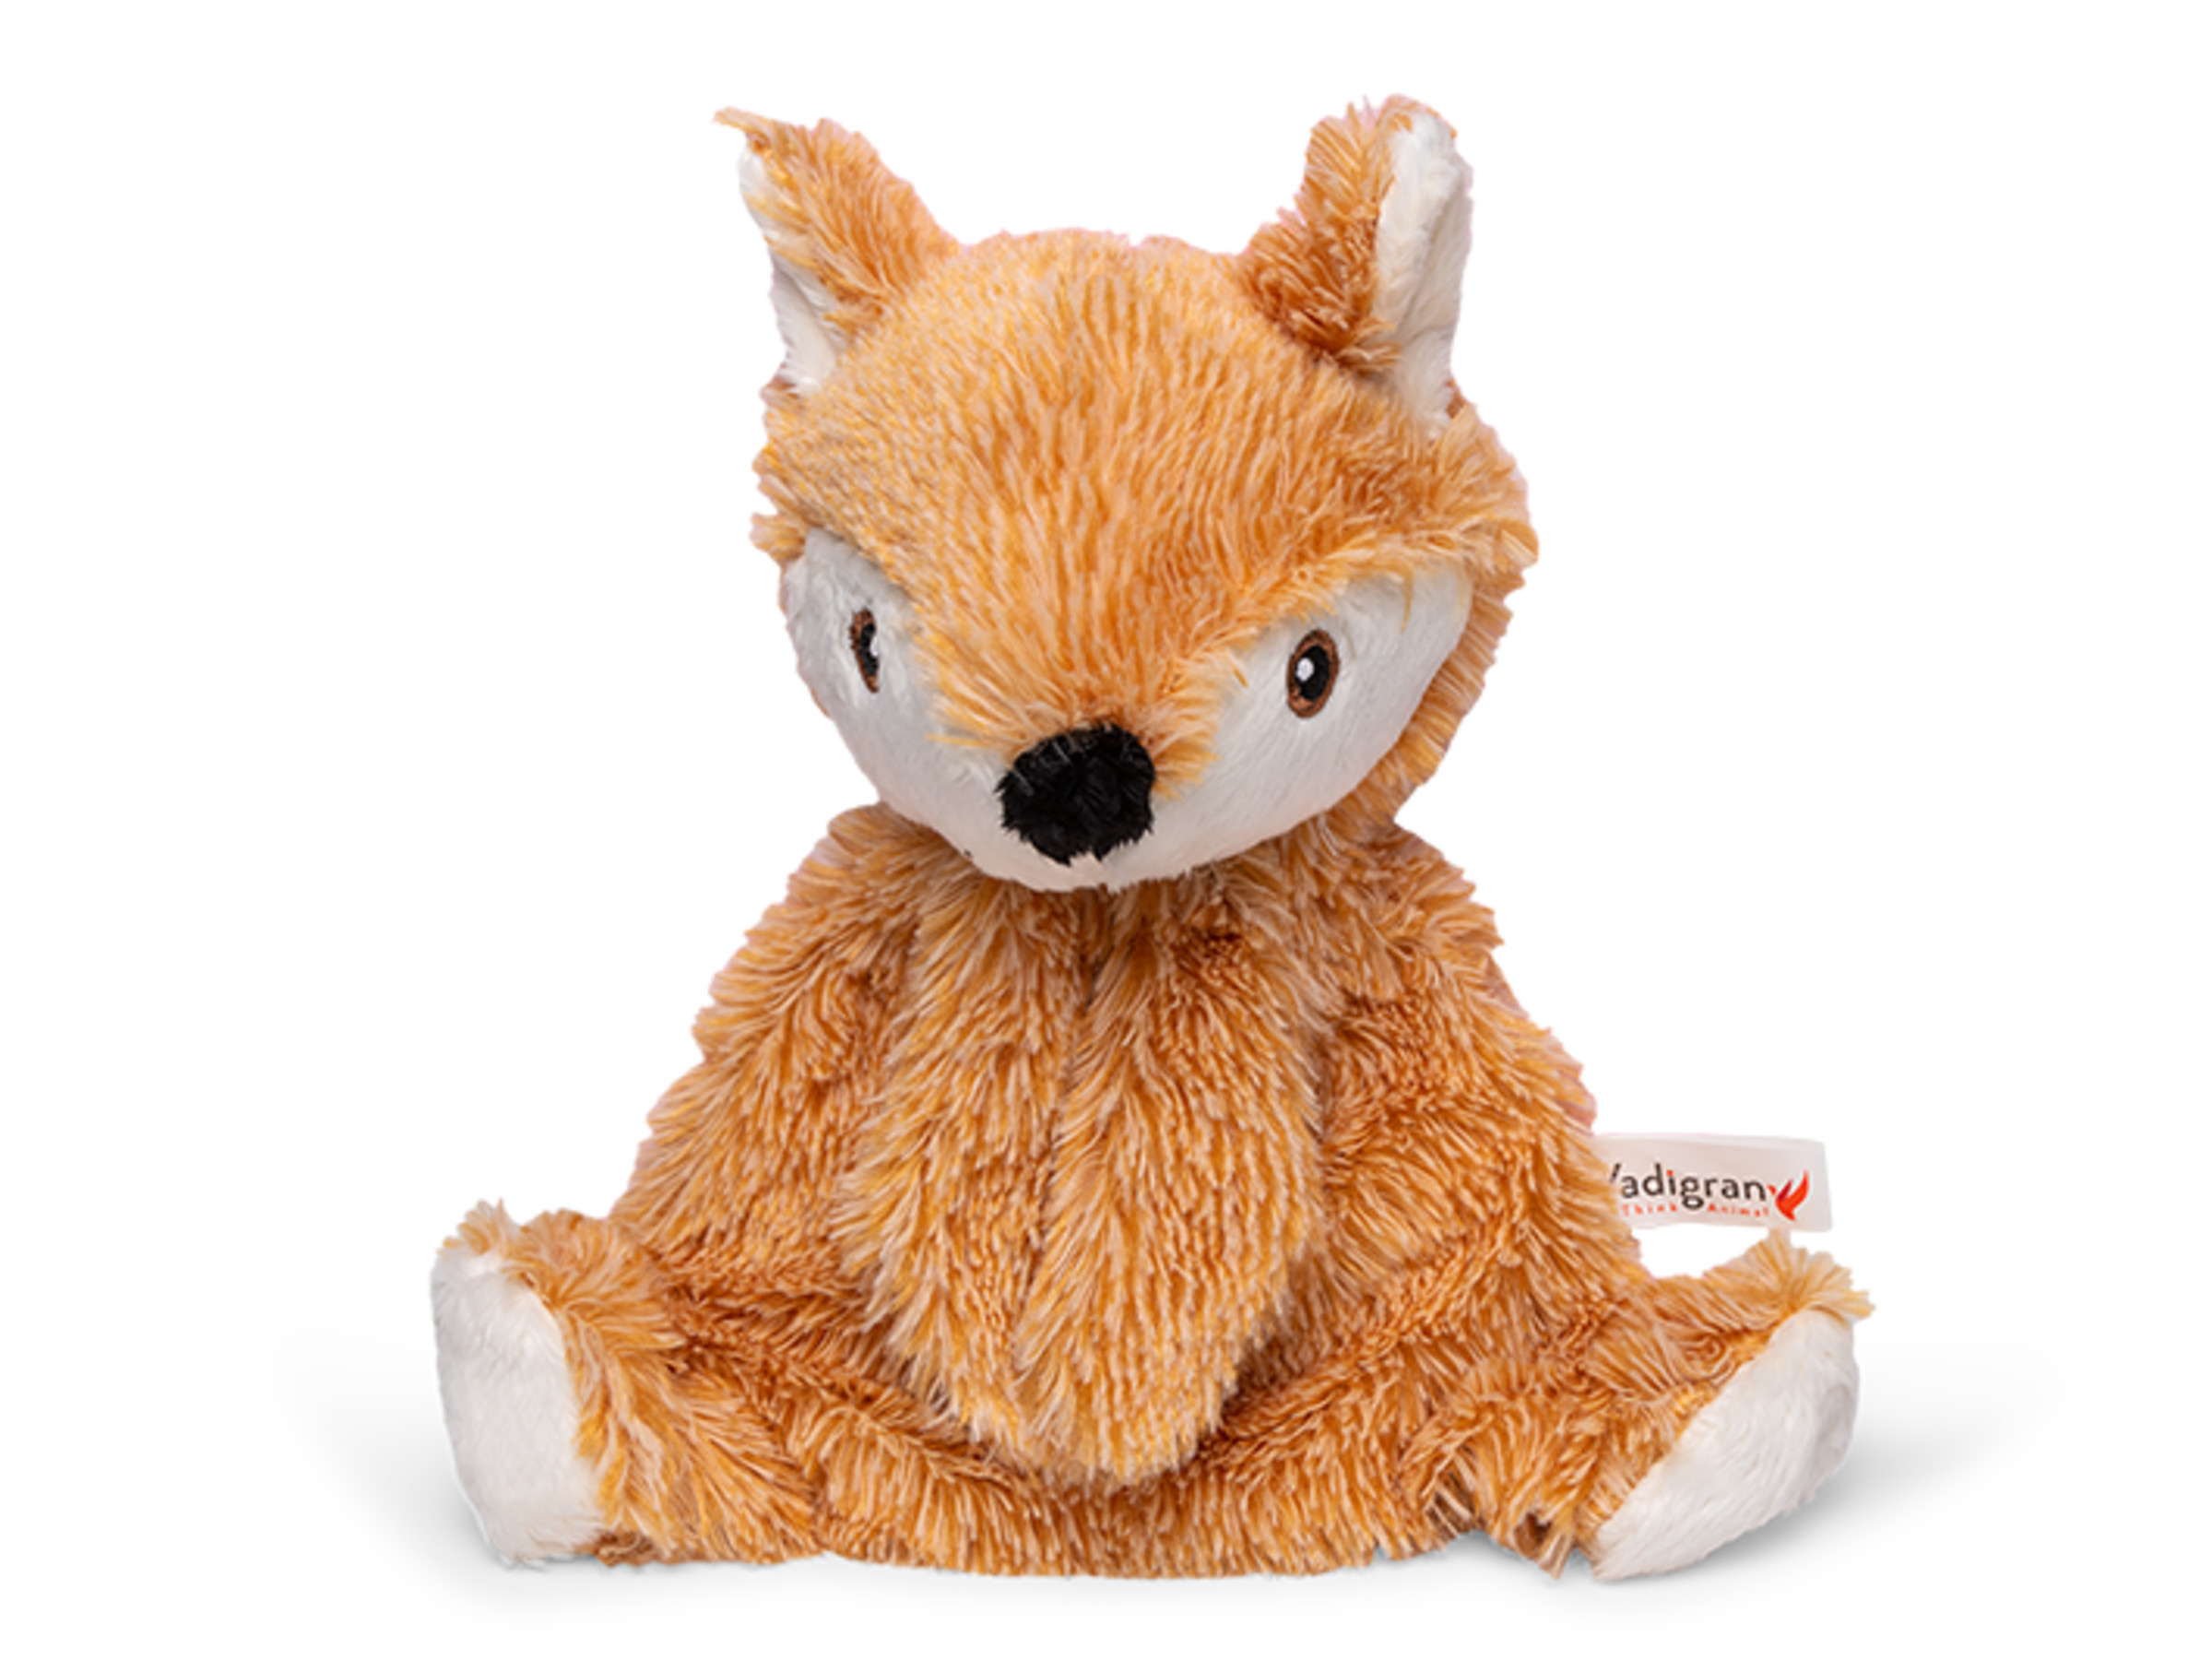 Vadigran Dog toy plush Crinkie Fox 28cm